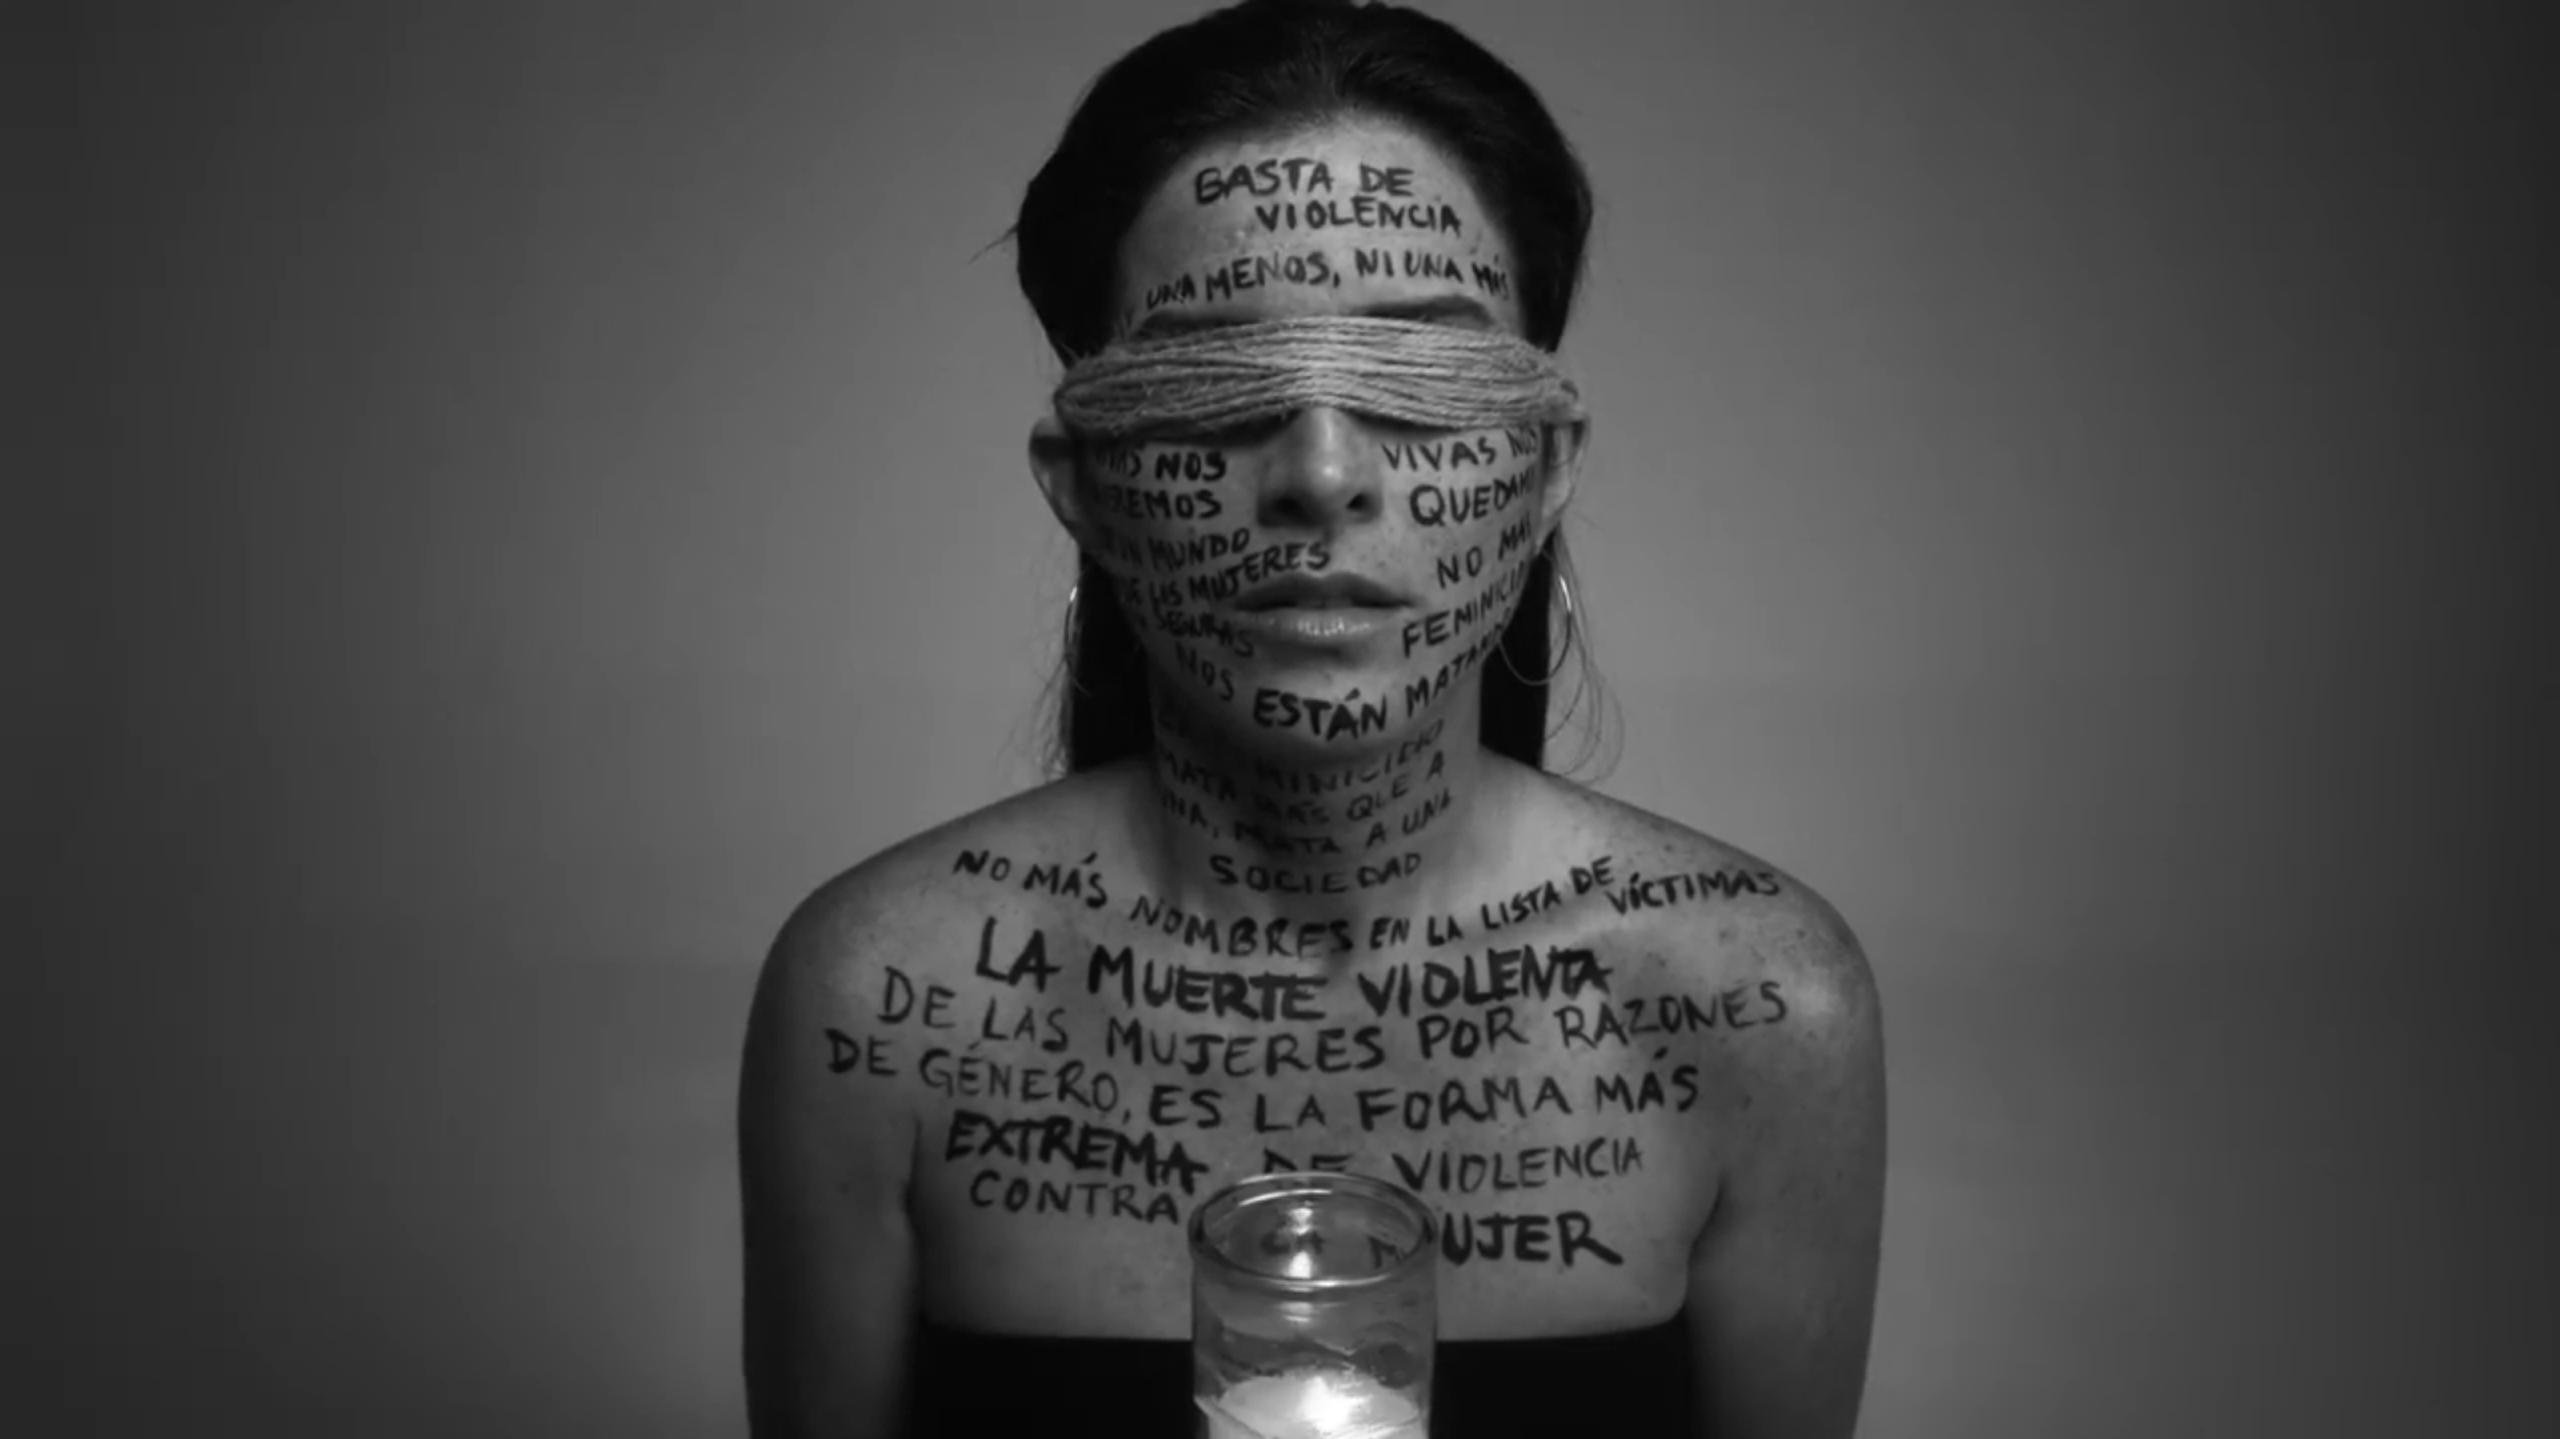 El cortometraje surge a raíz del marcado aumento de feminicidios en Puerto Rico.